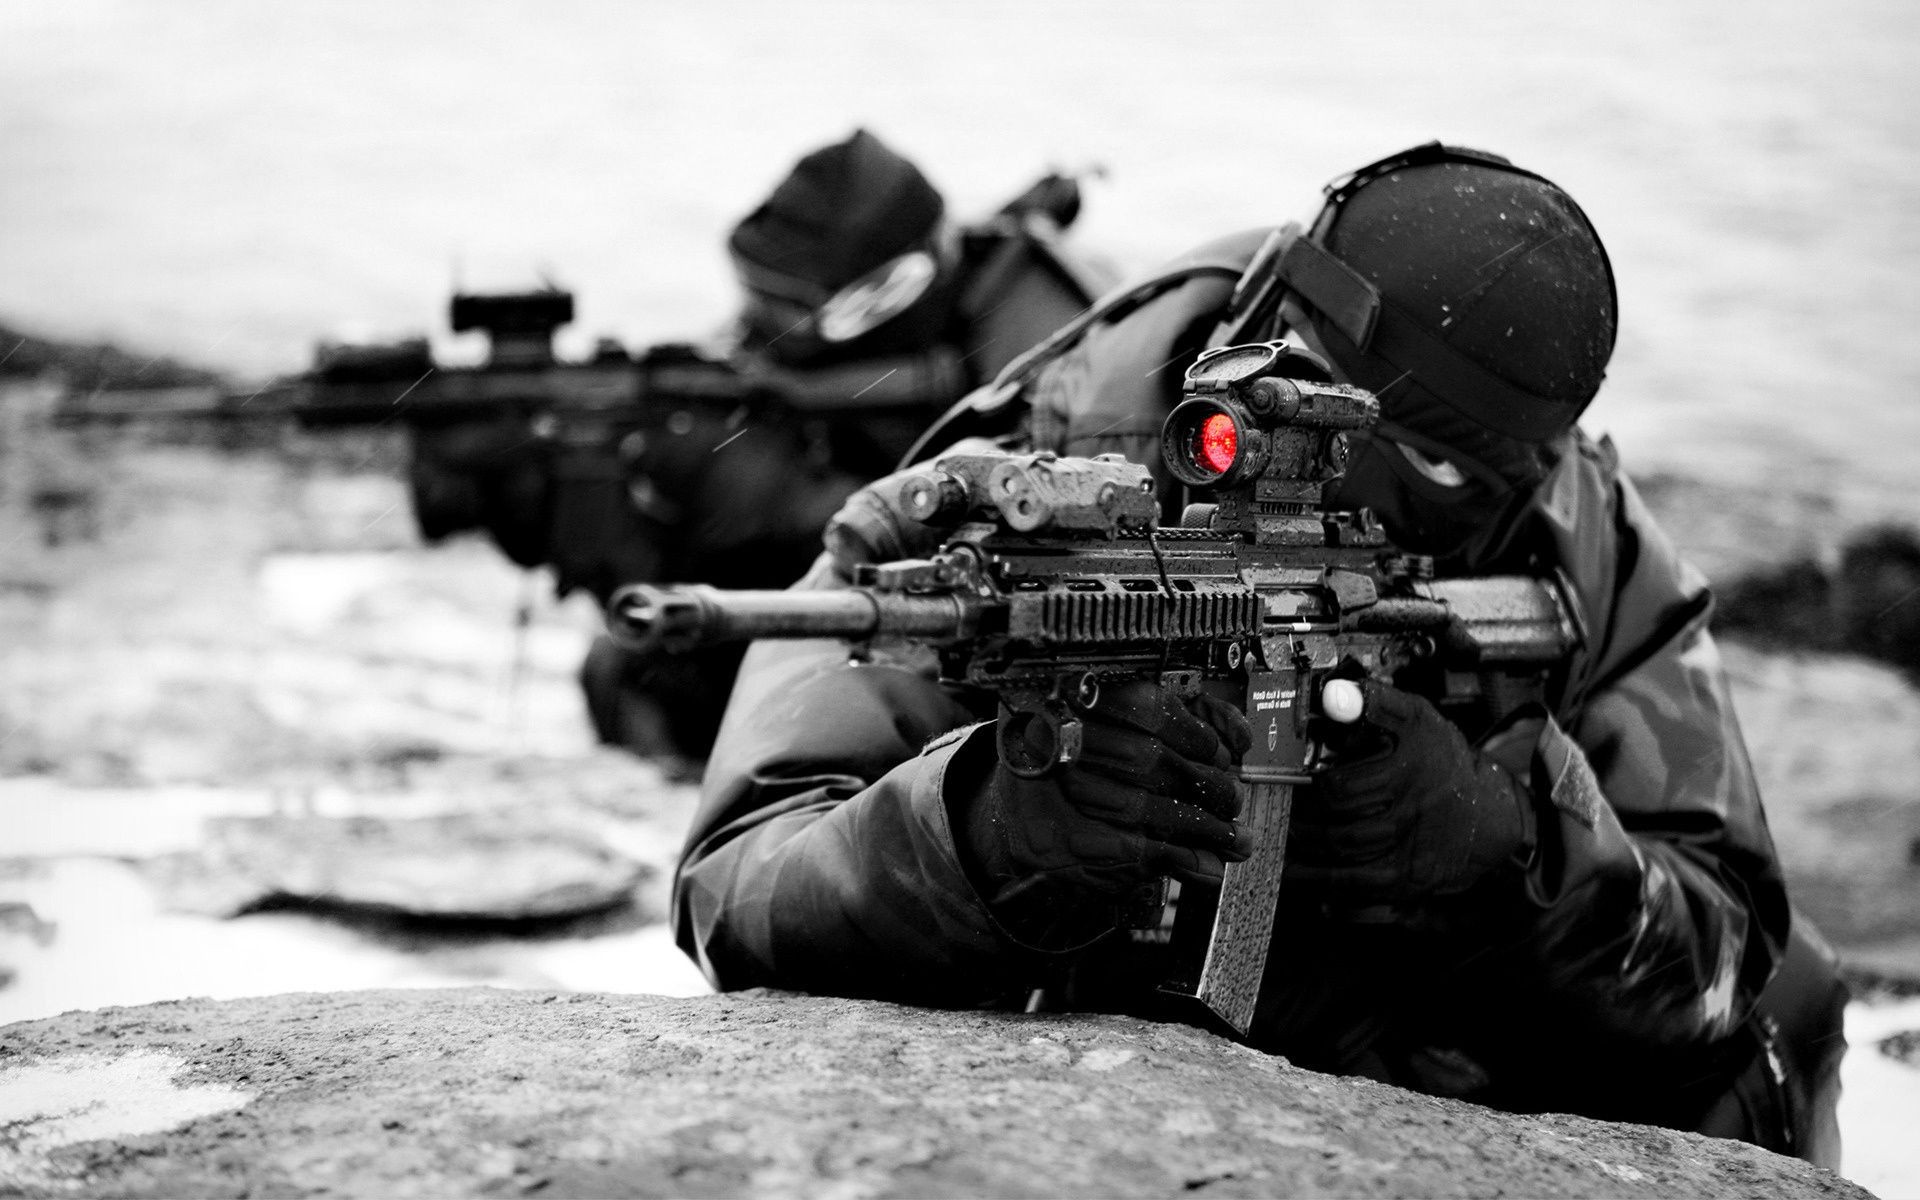 swat gun war military weapon soldier rifle adult man combat army machine gun one uniform